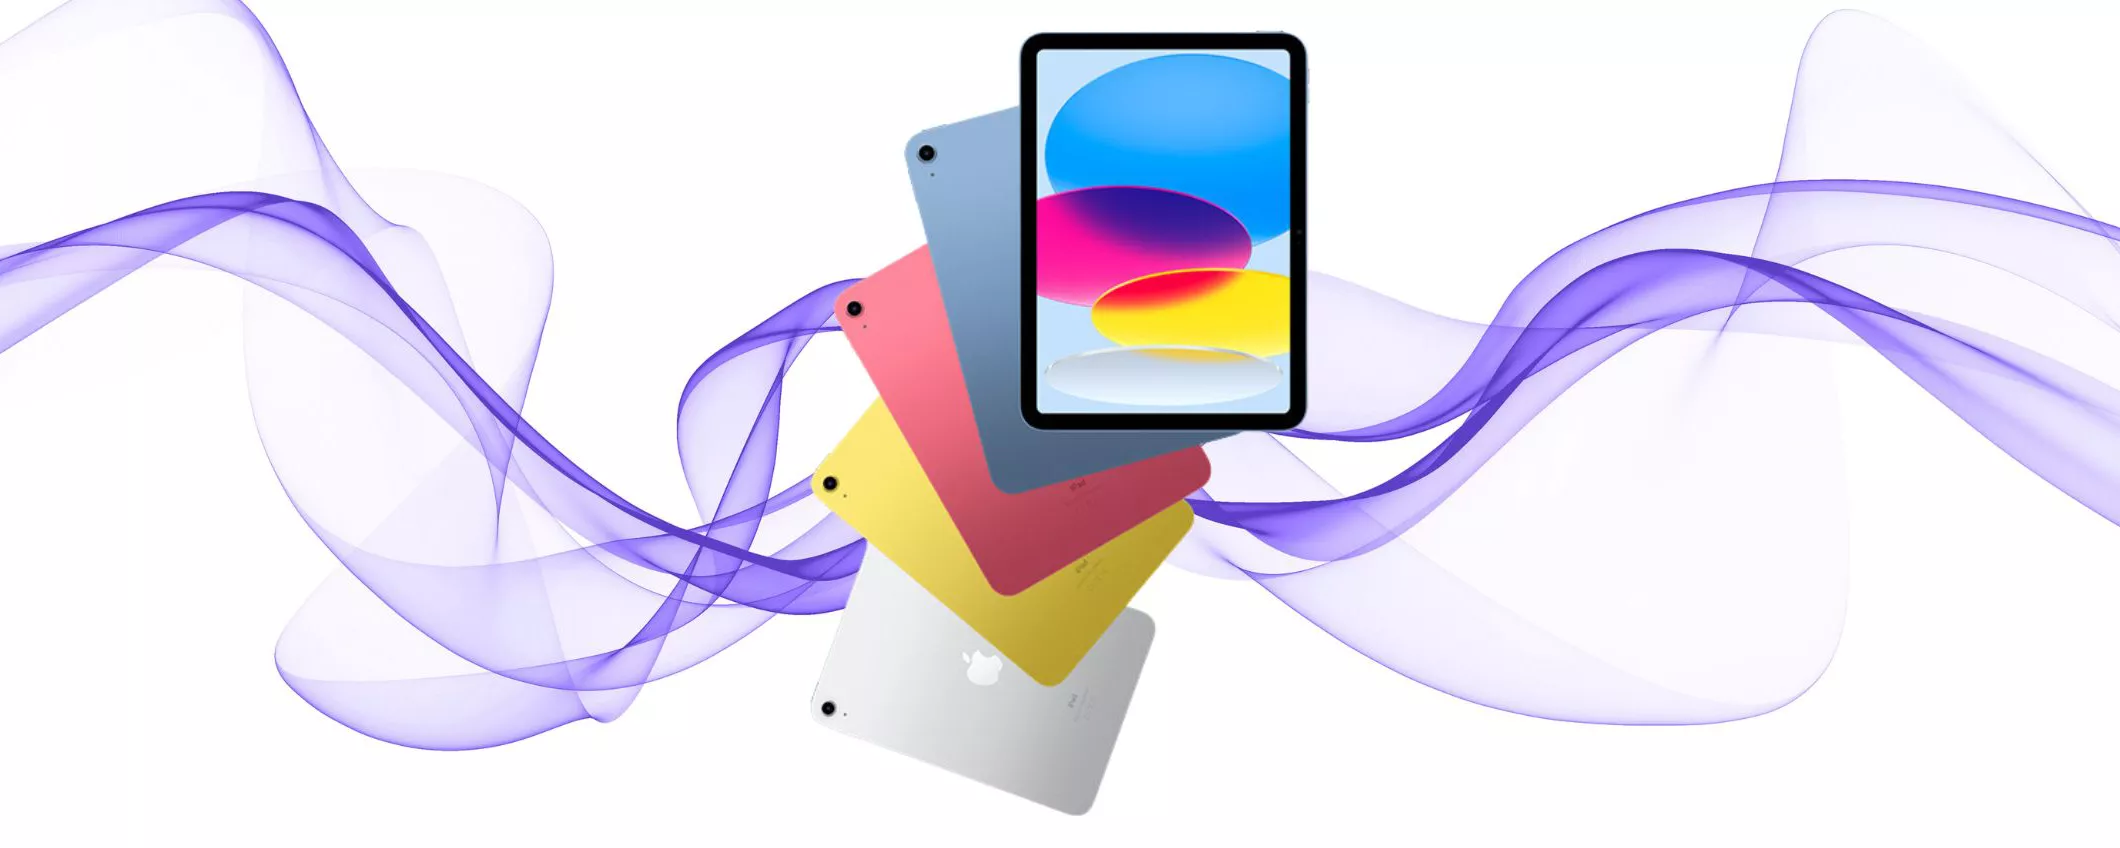 Apple prevede una rivoluzione nell'iPad: cornici più sottili con la tecnologia LIPO